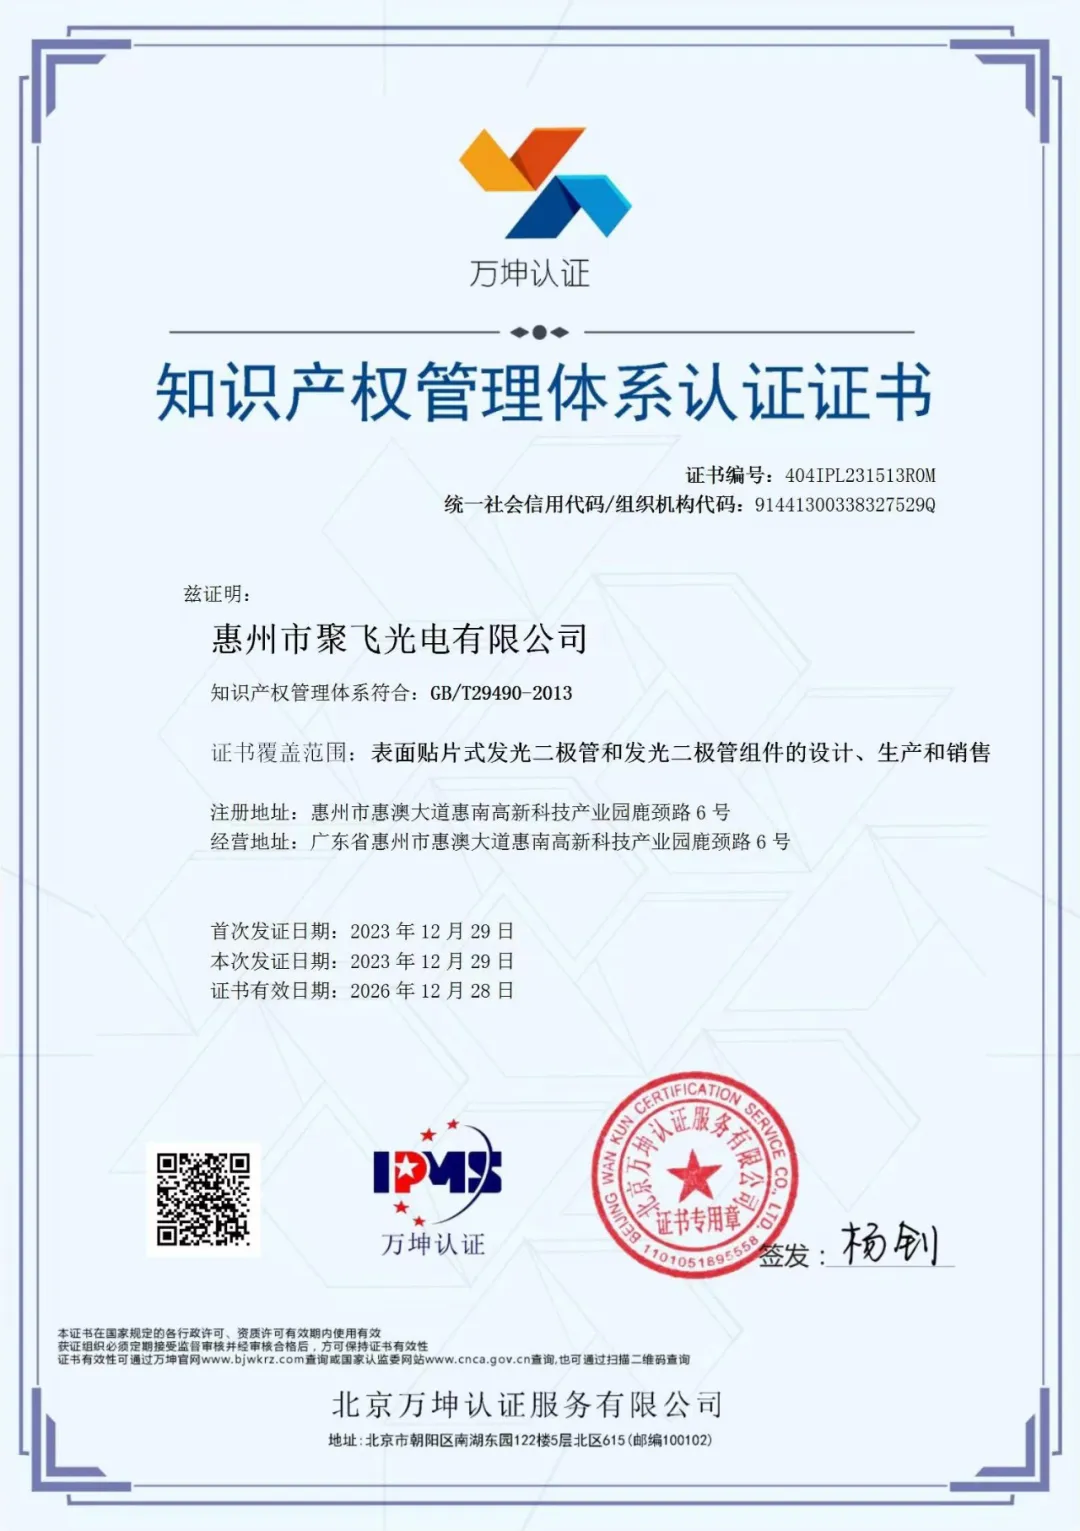 惠州金沙娱场城app7979通过企业知识产权管理规范认证